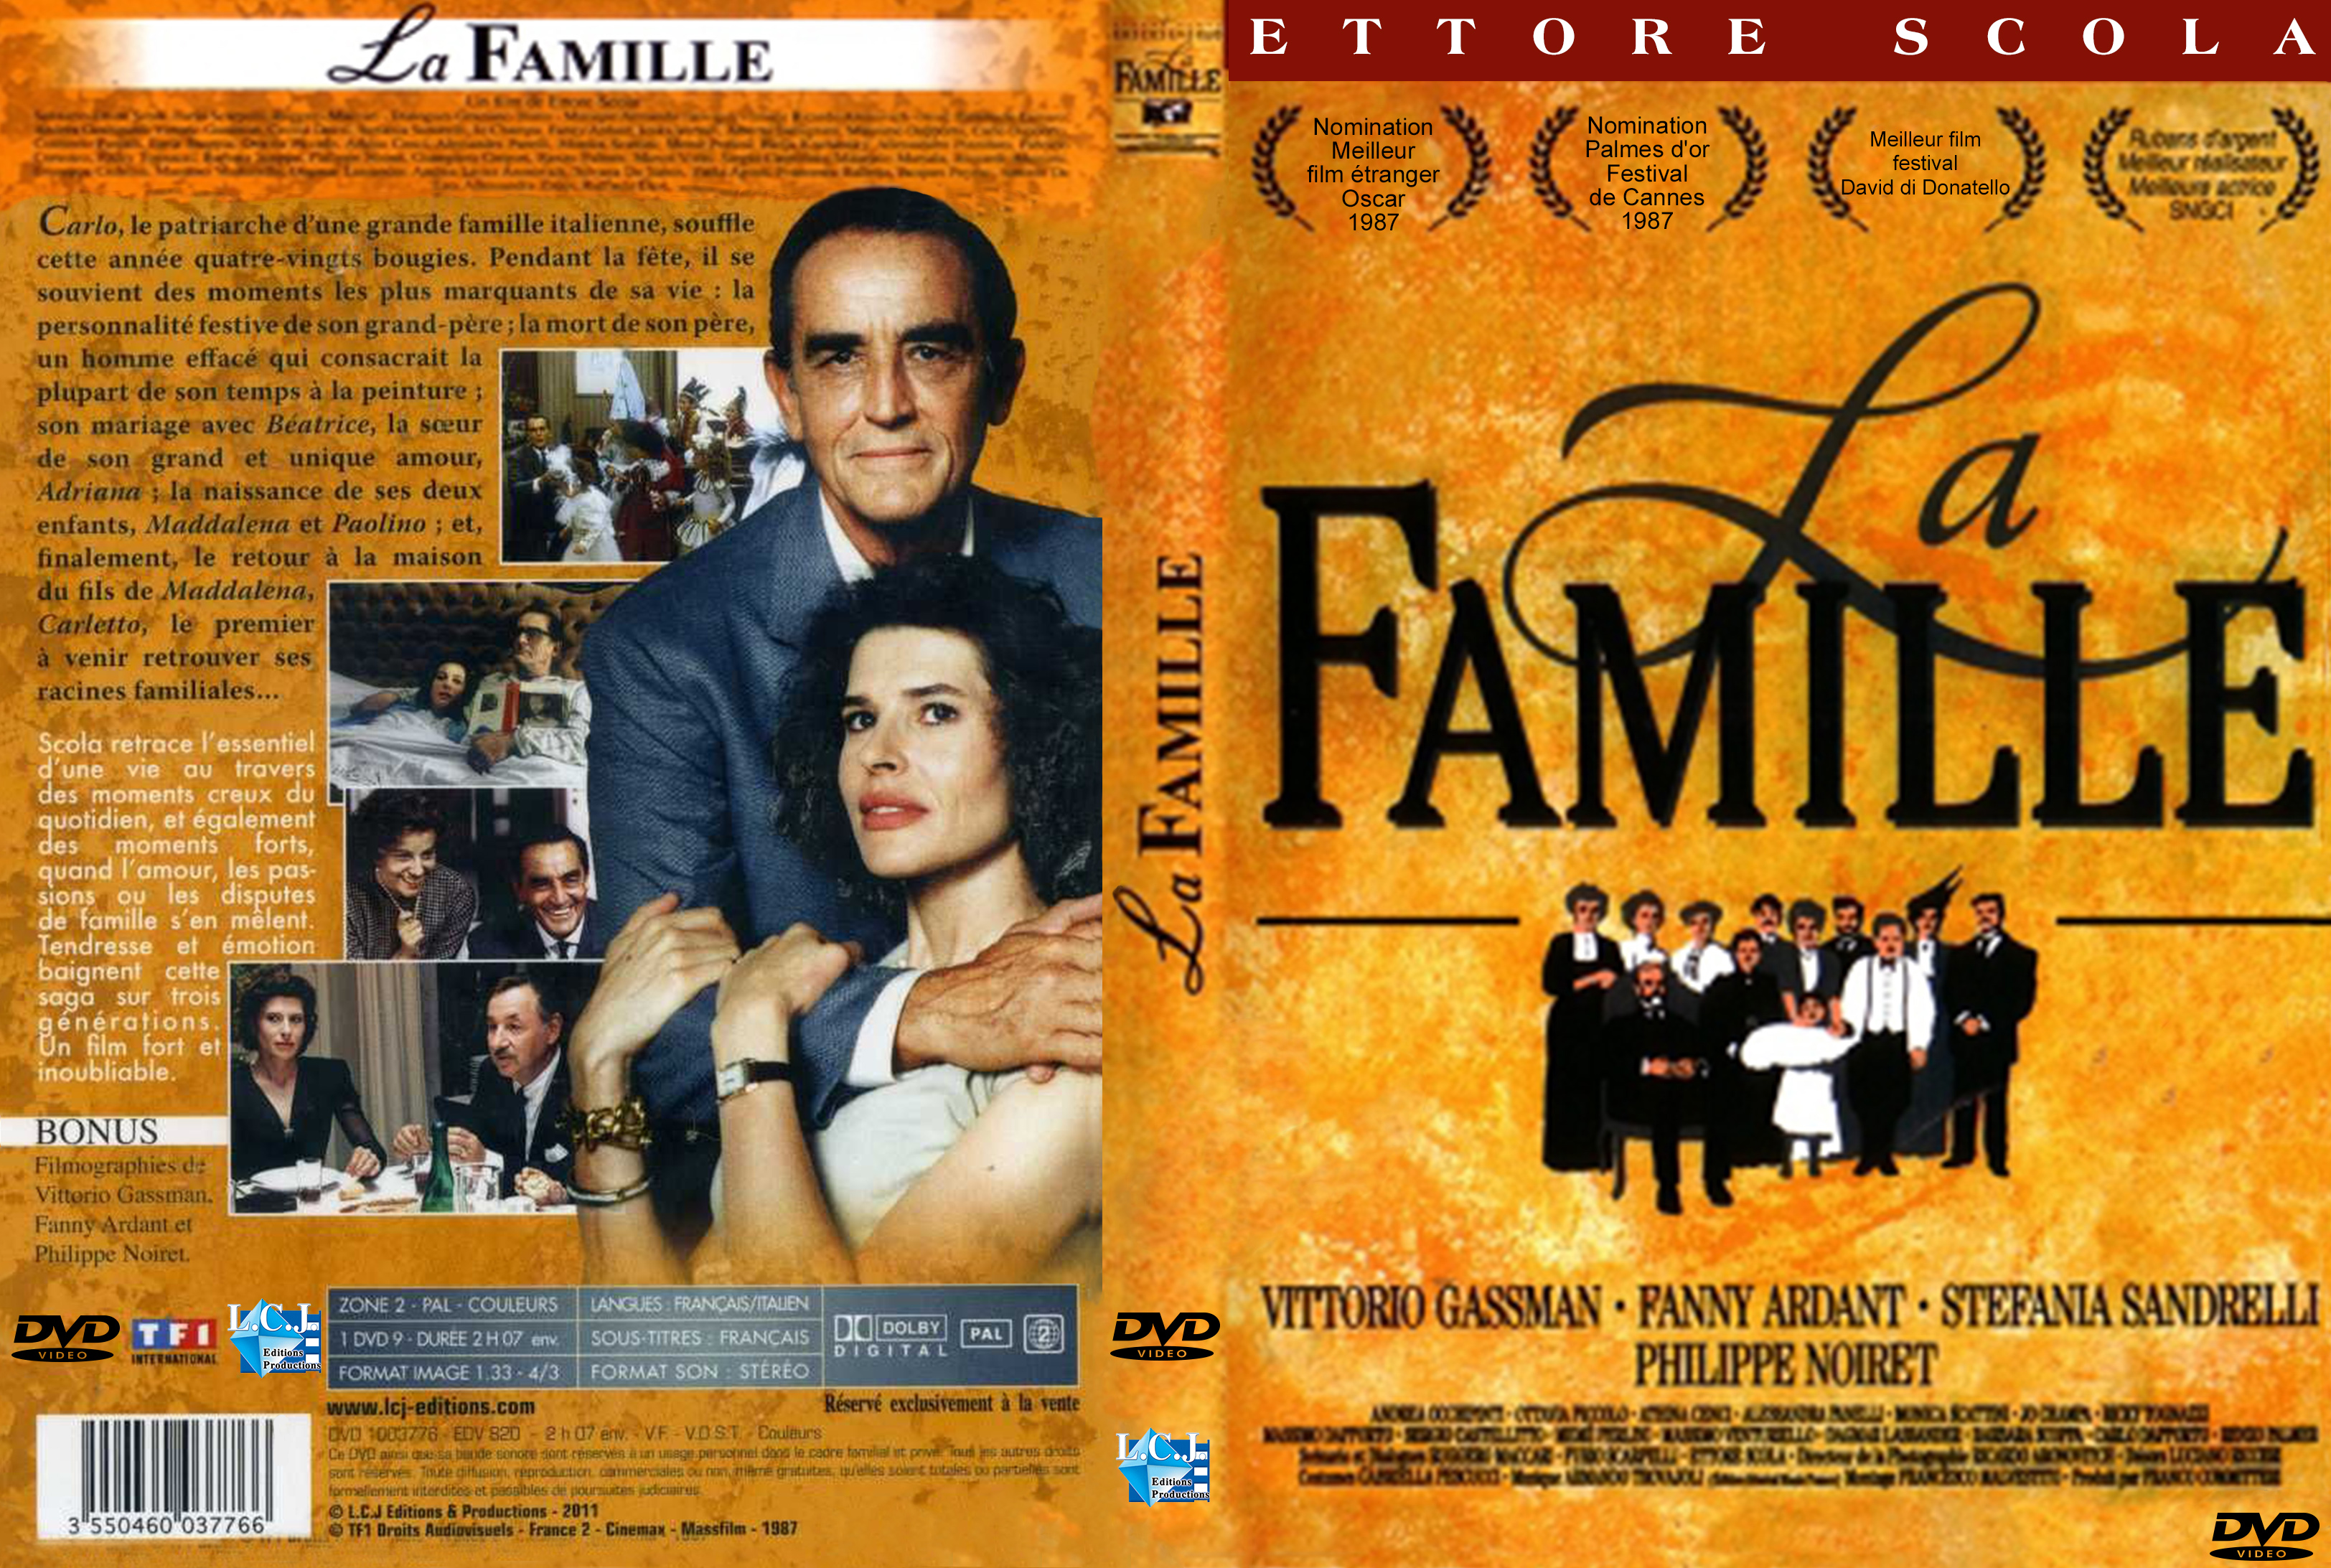 Jaquette DVD La famille